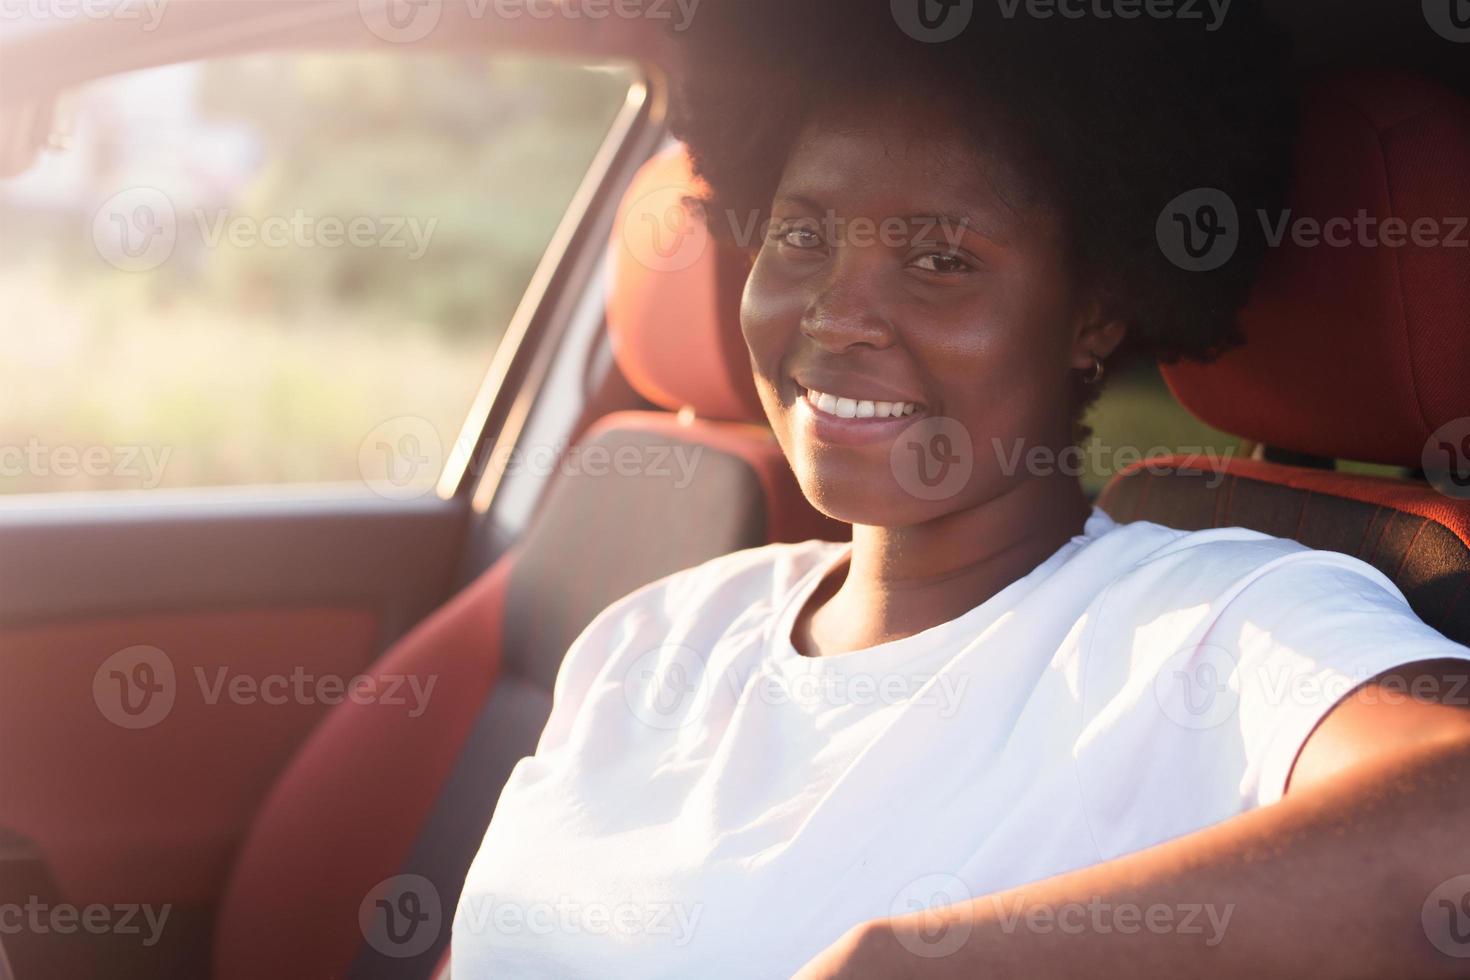 mulher afro-americana feliz em um carro, estilo de vida foto